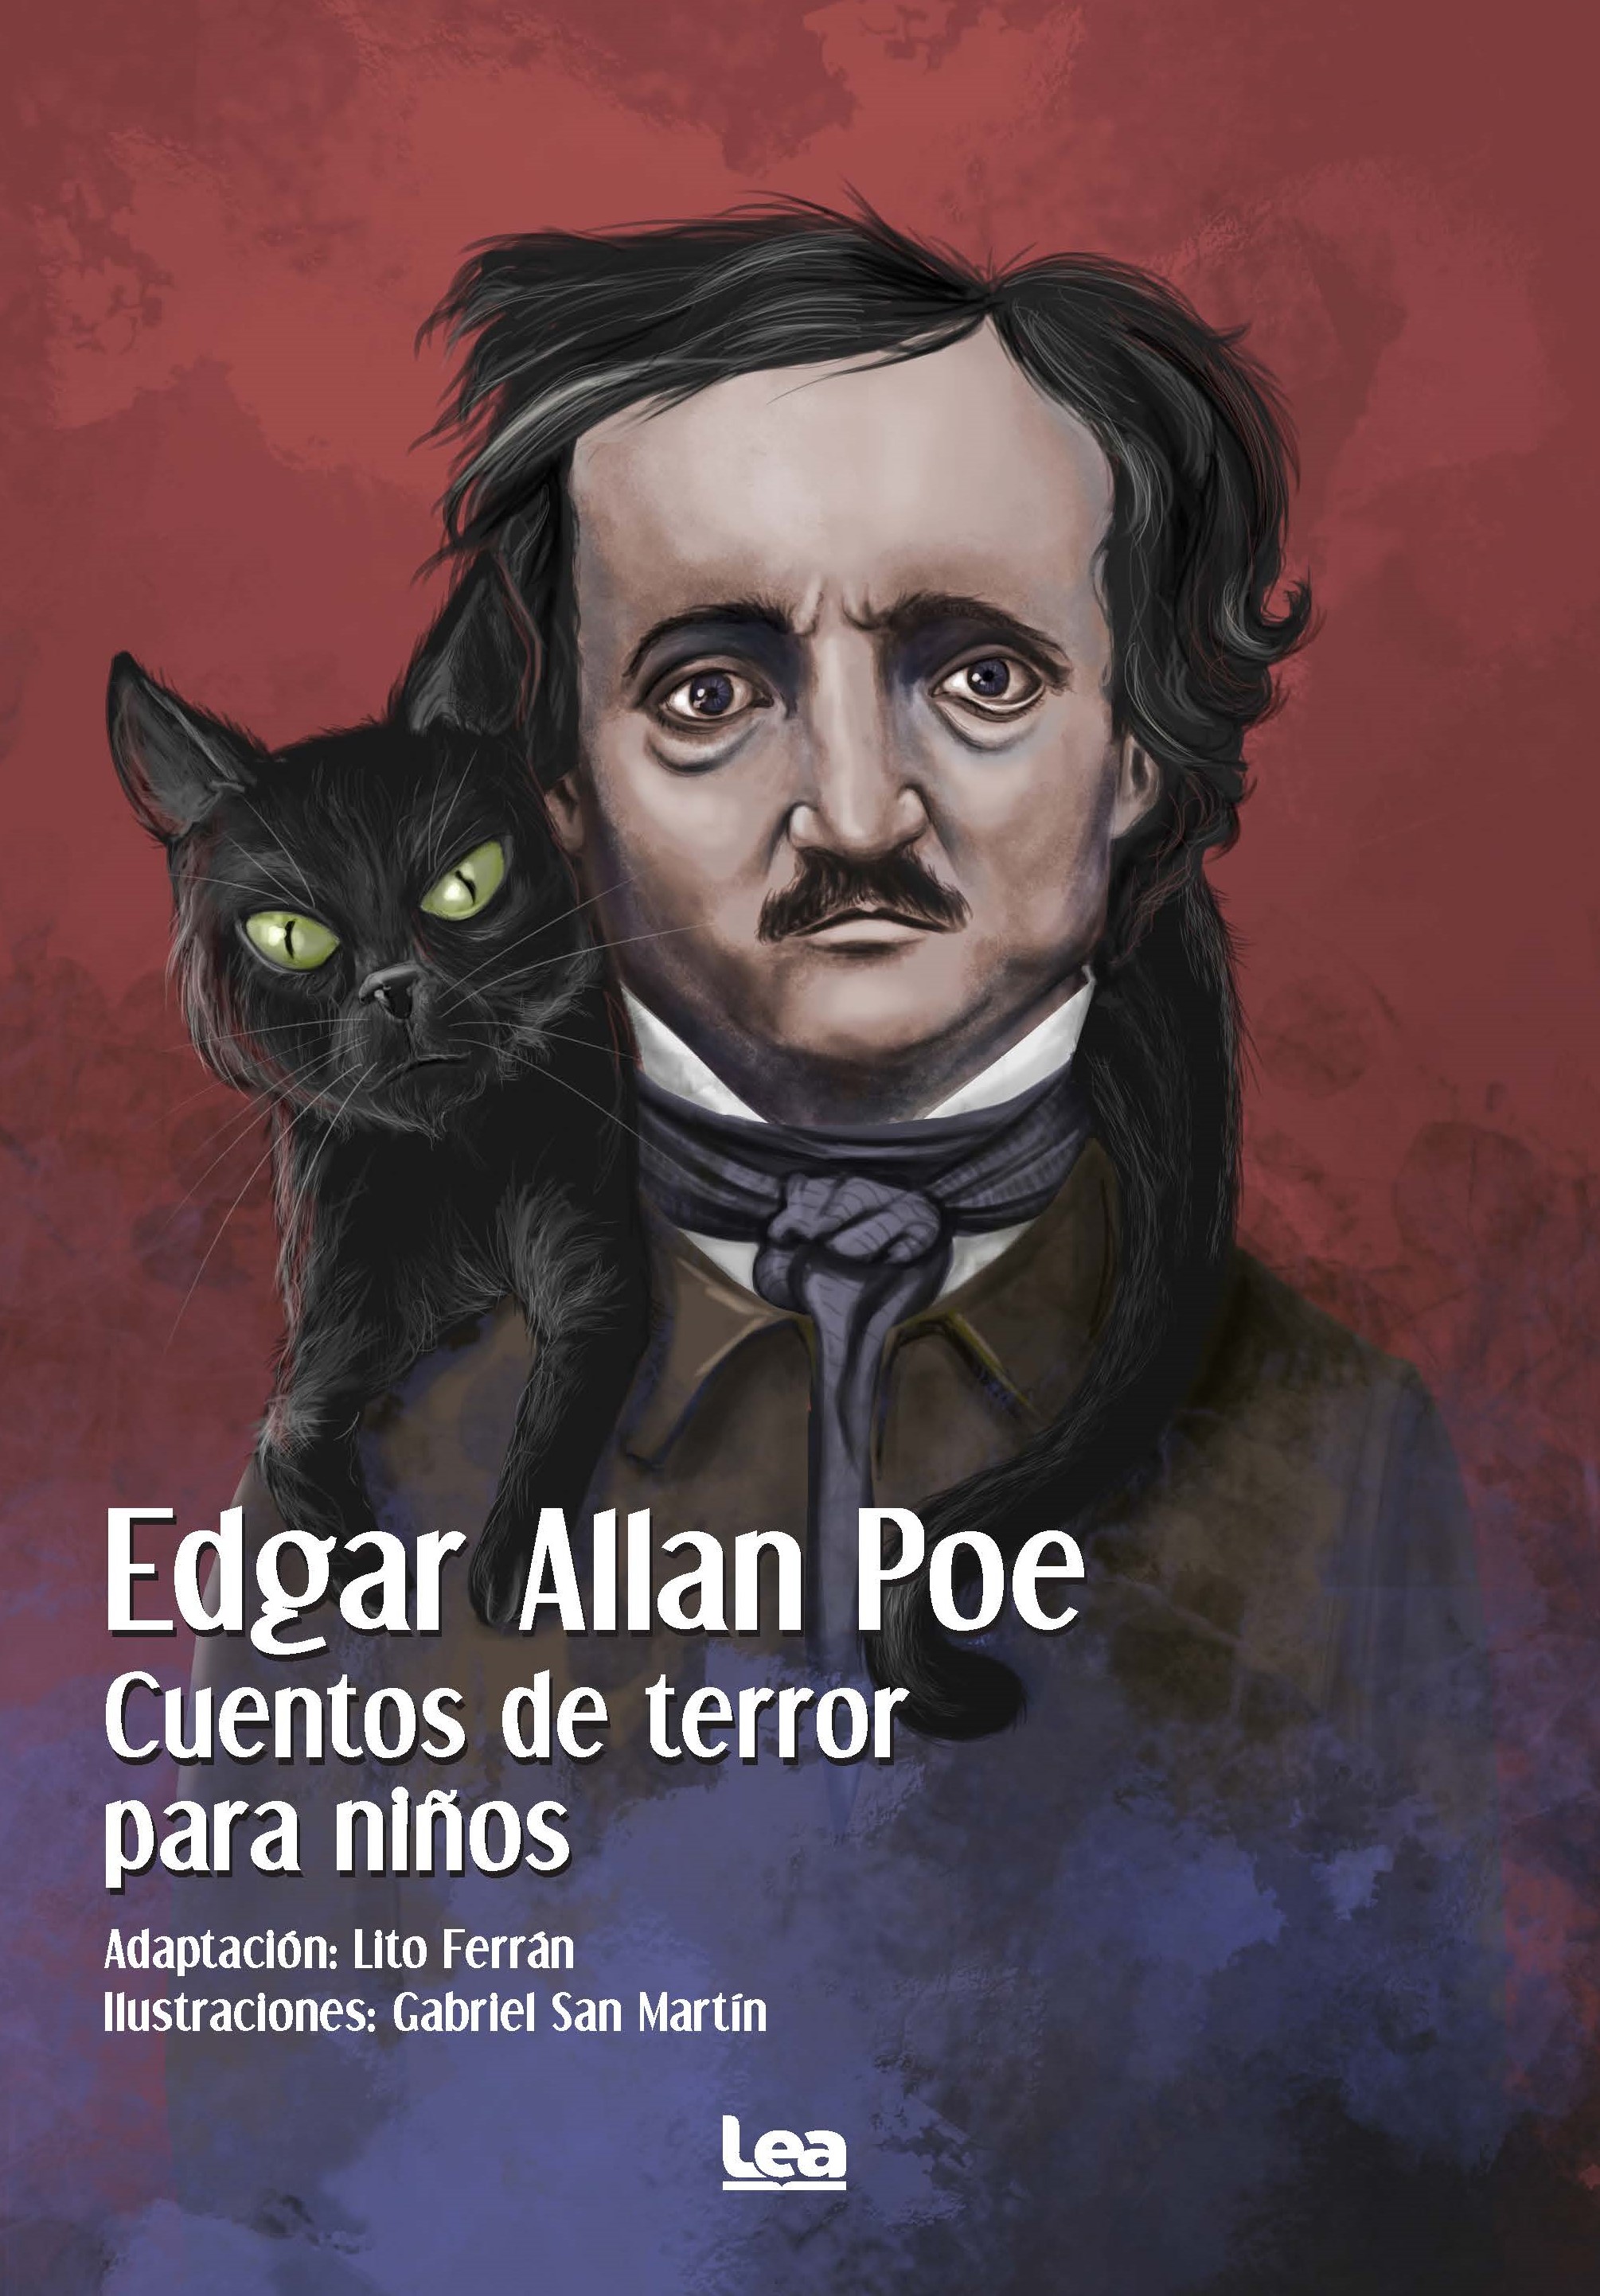 Edgar Allan Poe. Cuentos de terror para niños - La tienda de libros